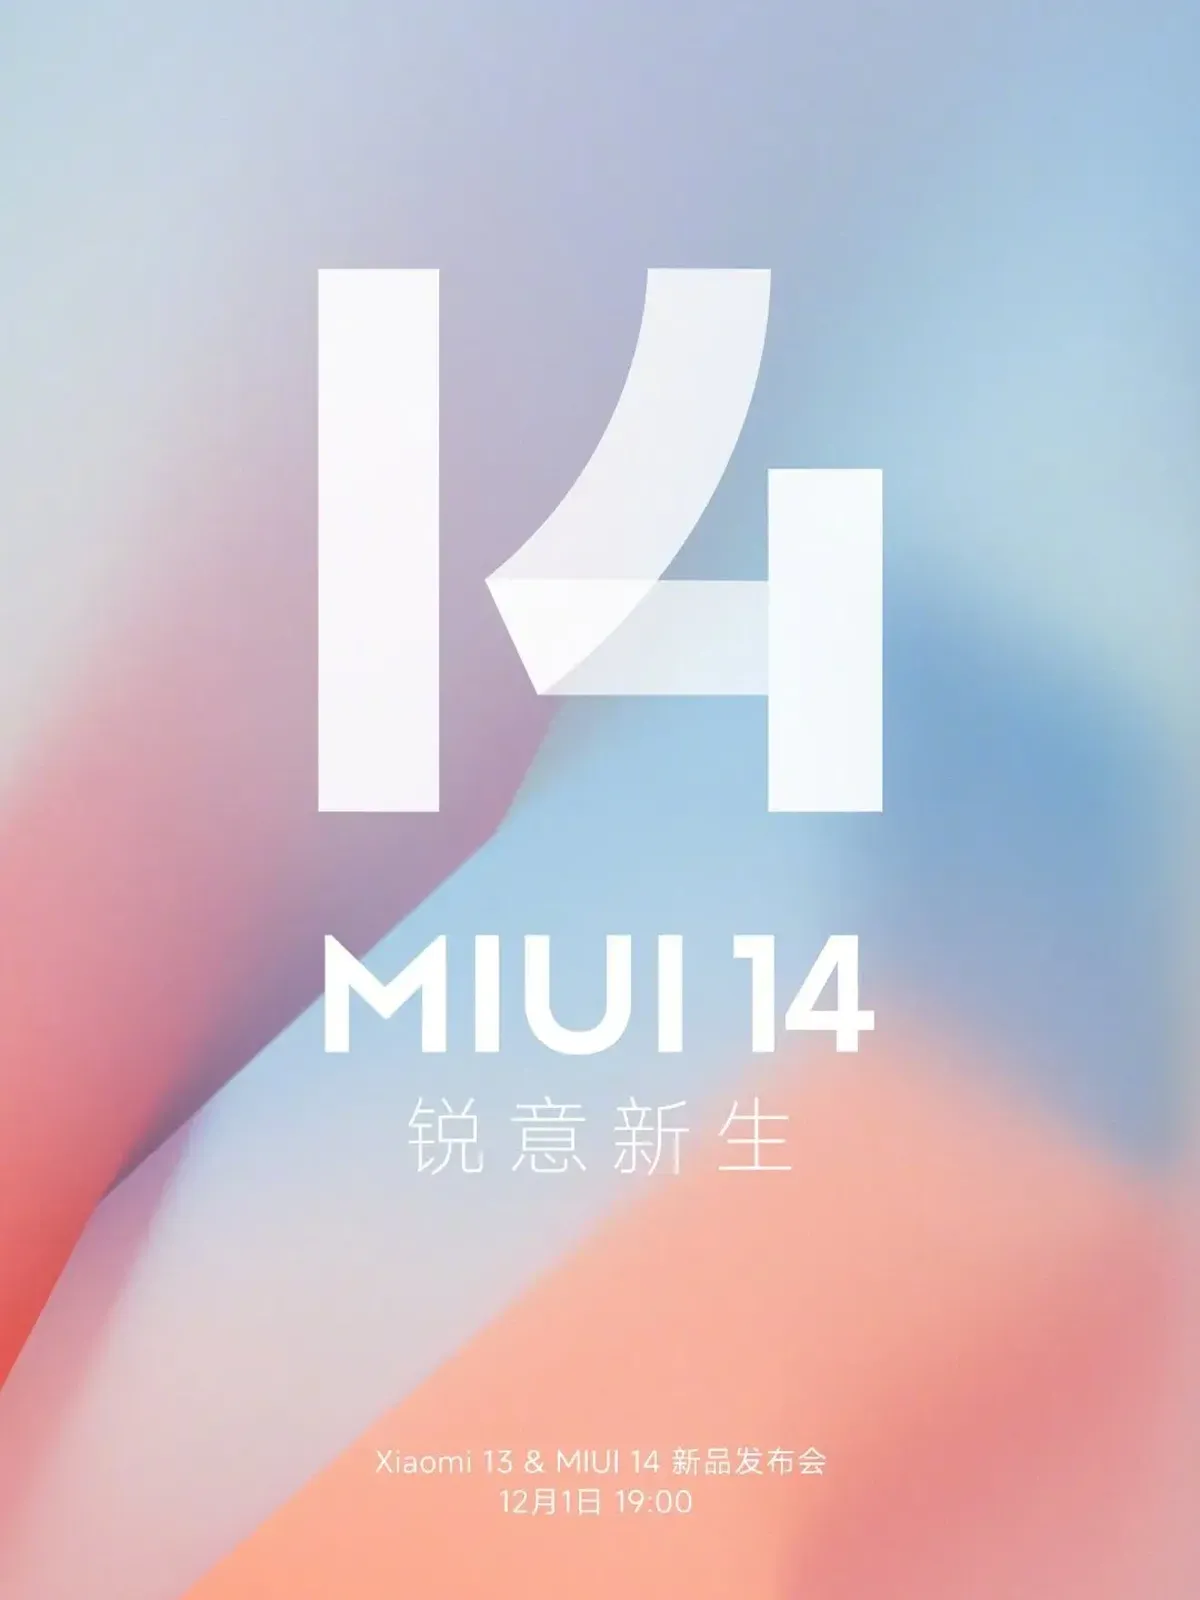 Xiaomi MIUI 14 será anunciado em 1º de dezembro